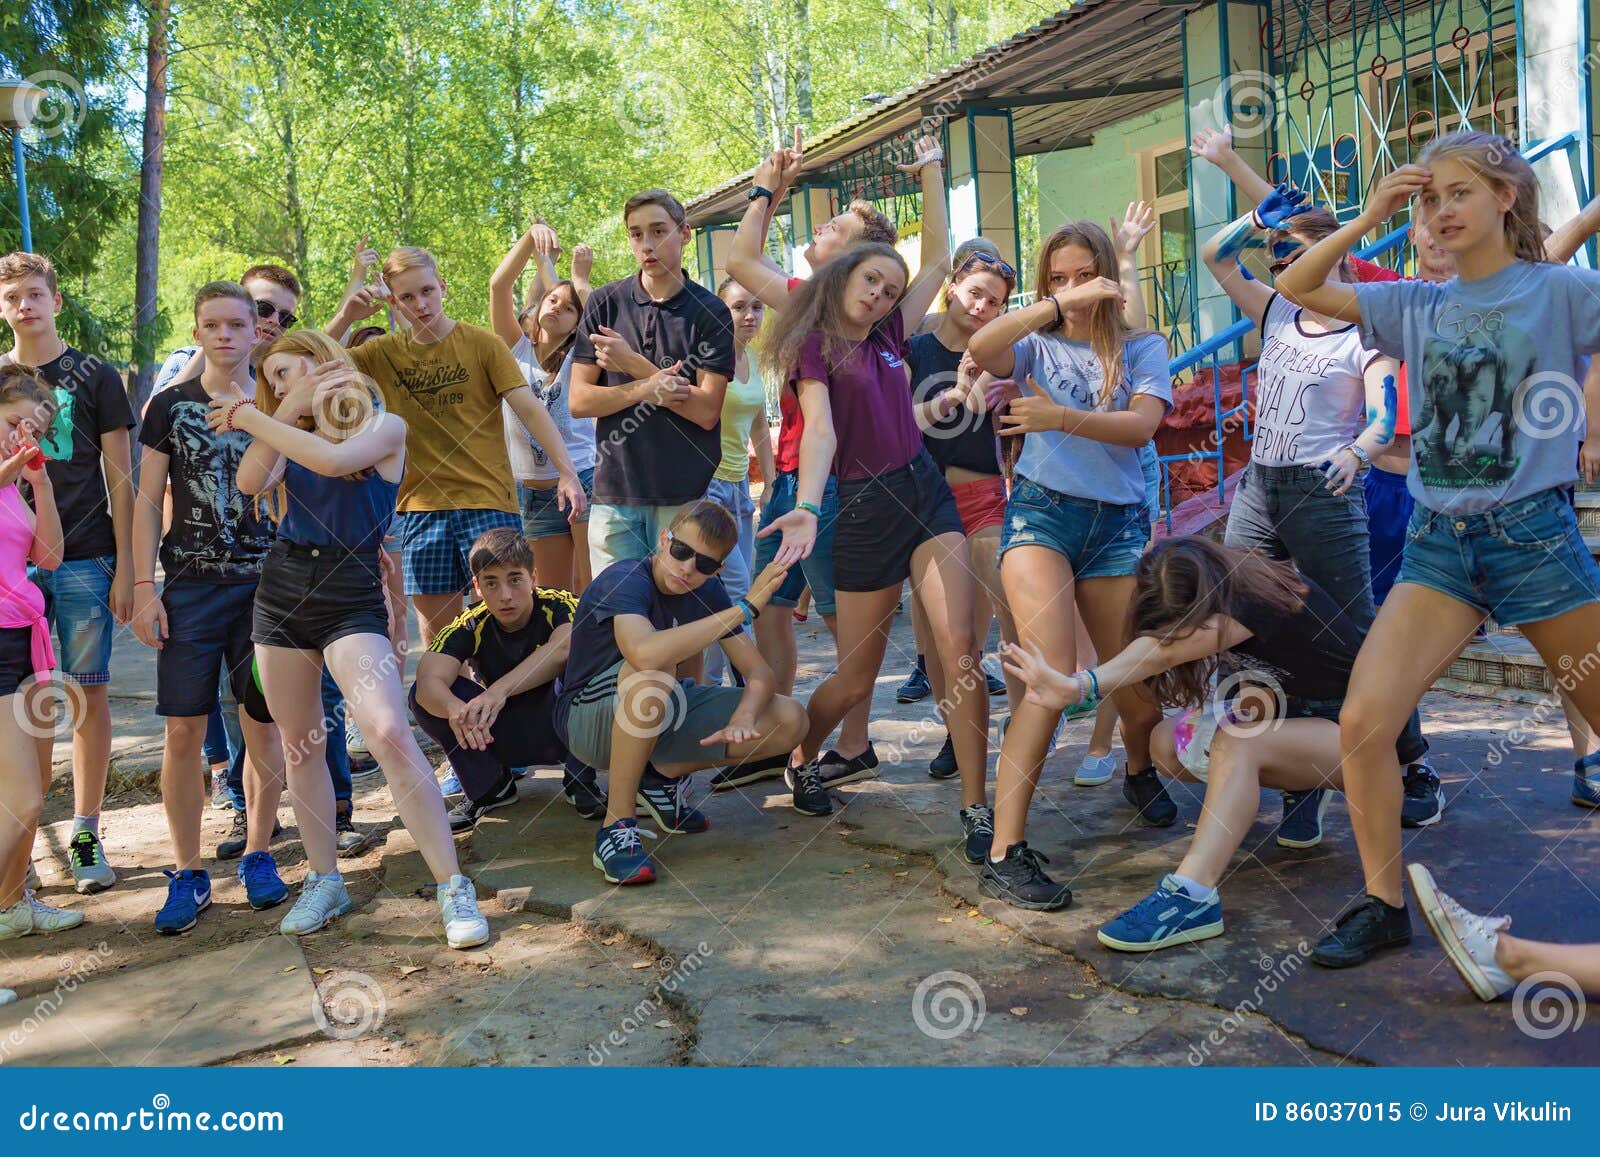 乐趣暑假. 一个小组孩子是不同的 儿童` s阵营` Berezka ` 社论 俄国 雅罗斯拉夫尔市地区